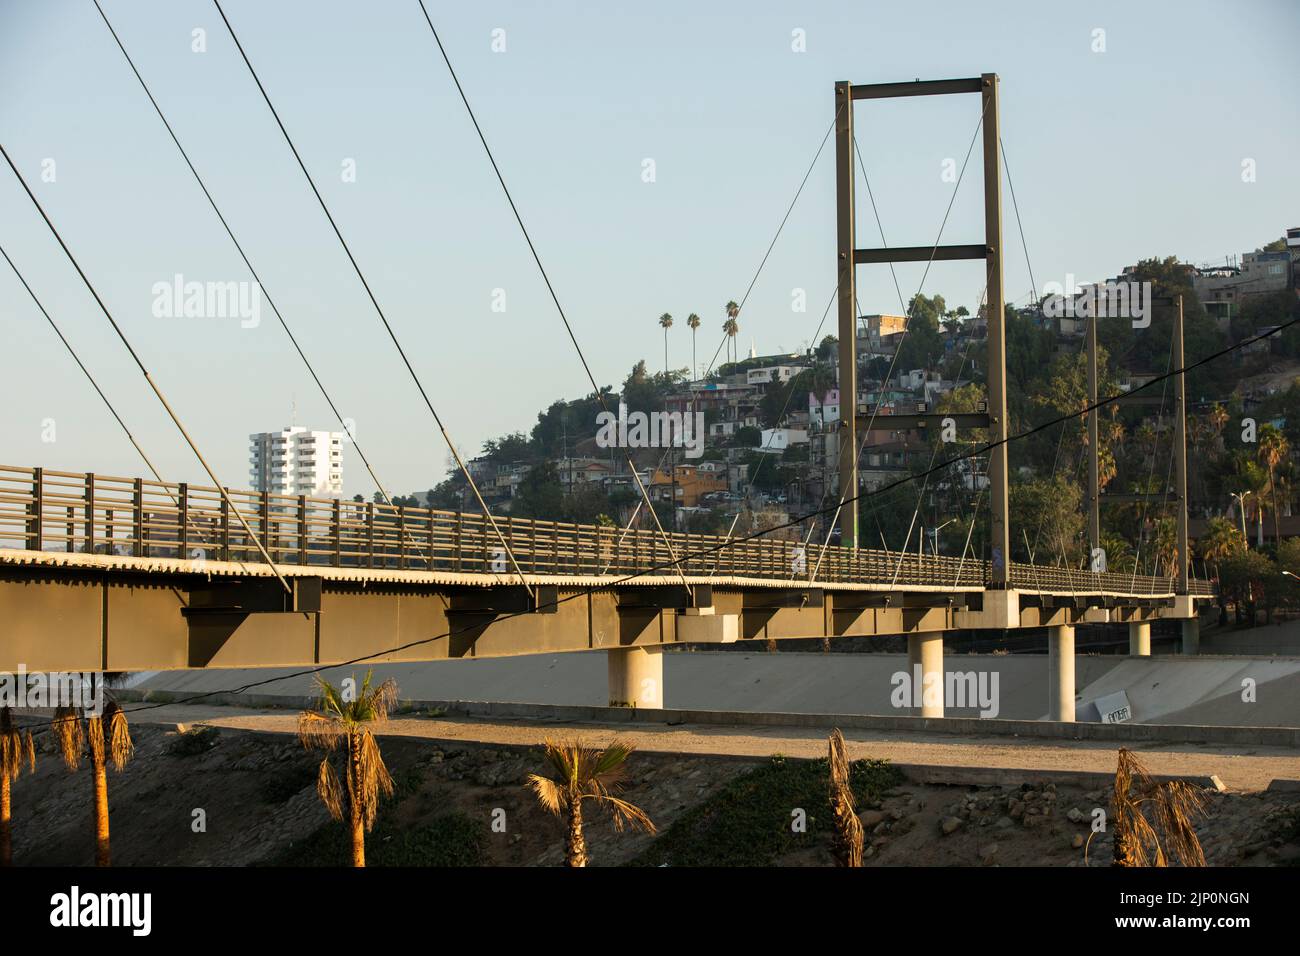 Tijuana, Baja California, Messico - 11 settembre 2021: La luce del mattino dall'alba illumina un ponte che attraversa il fiume Tijuana. Foto Stock